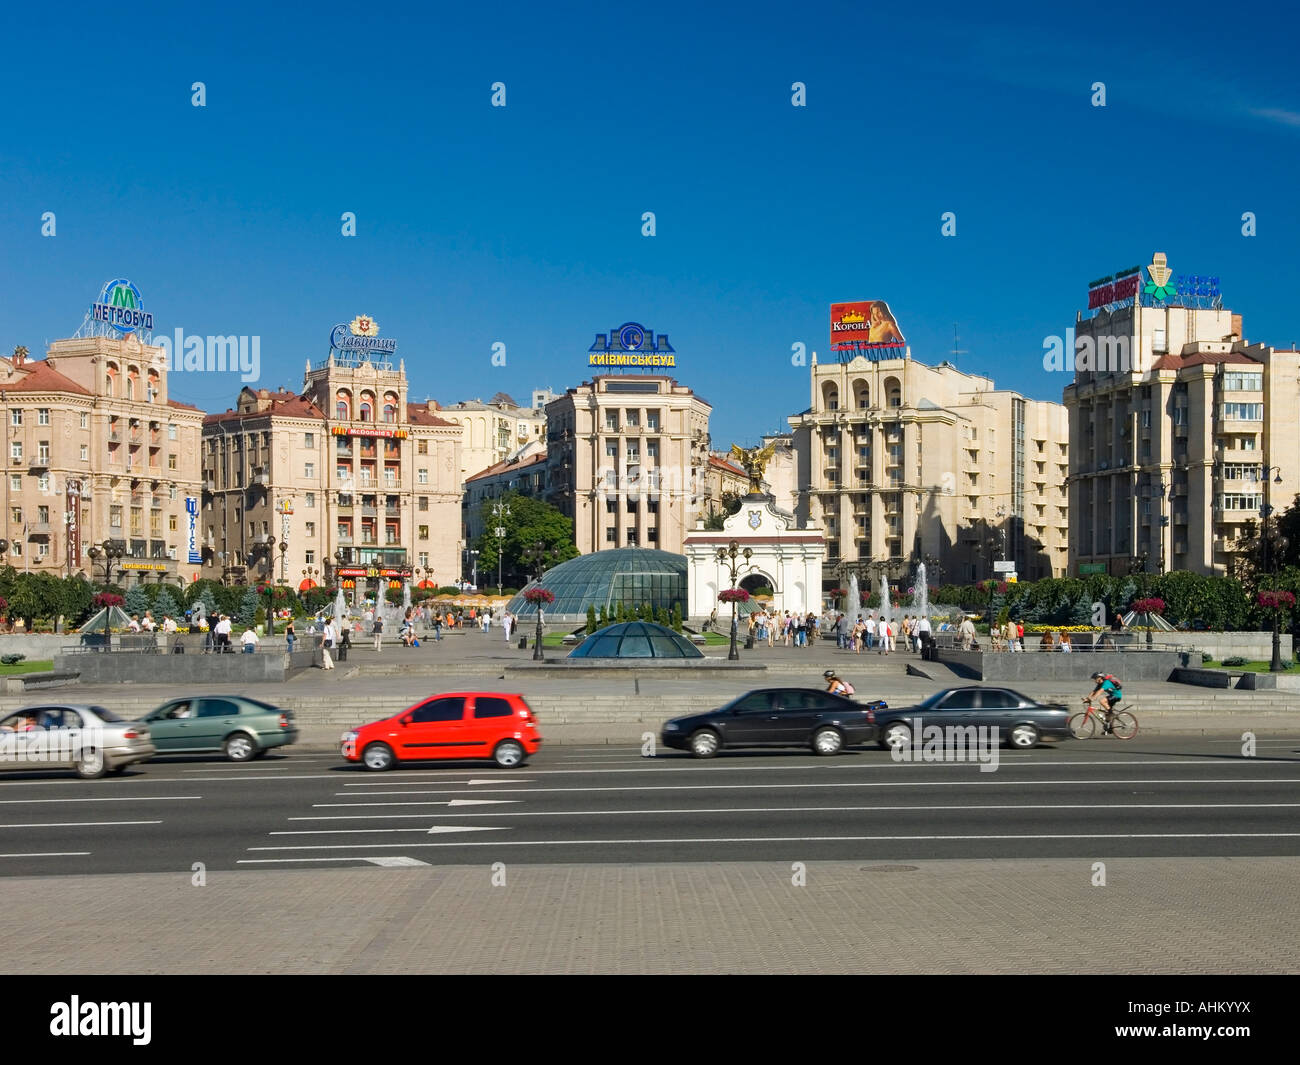 Independence square in Kiev Ukraine Stock Photo